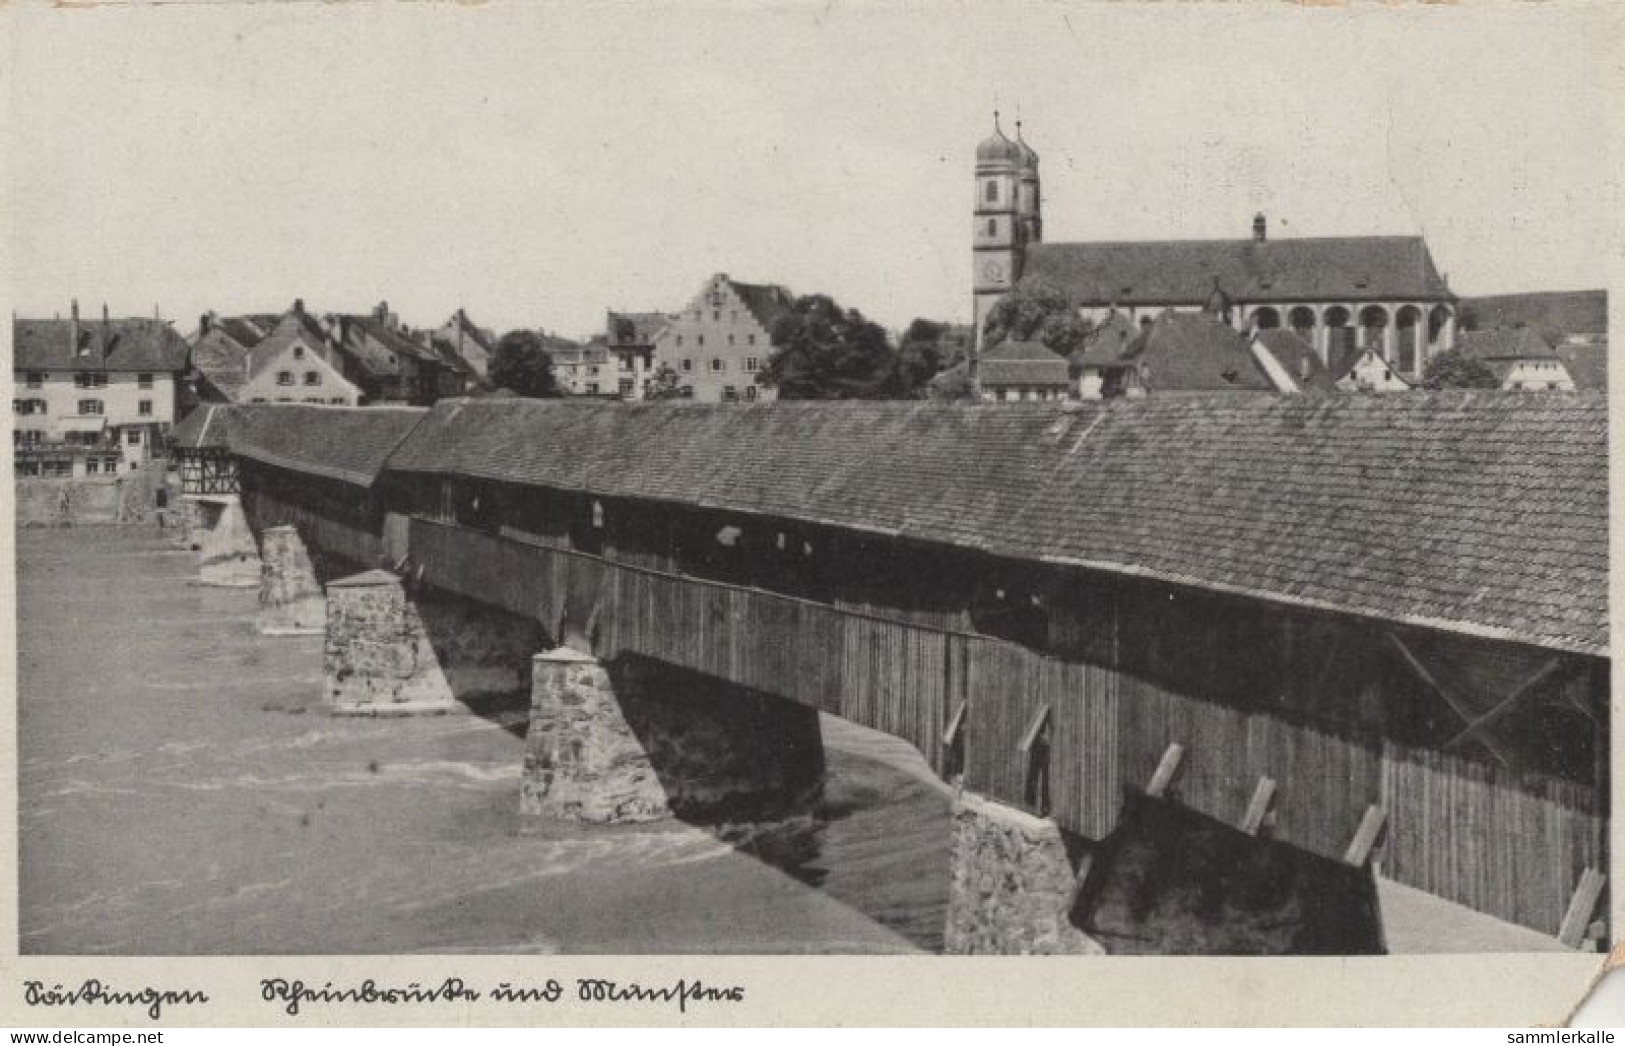 134194 - Bad Säckingen - Rheinbrücke Und Münster - Bad Säckingen